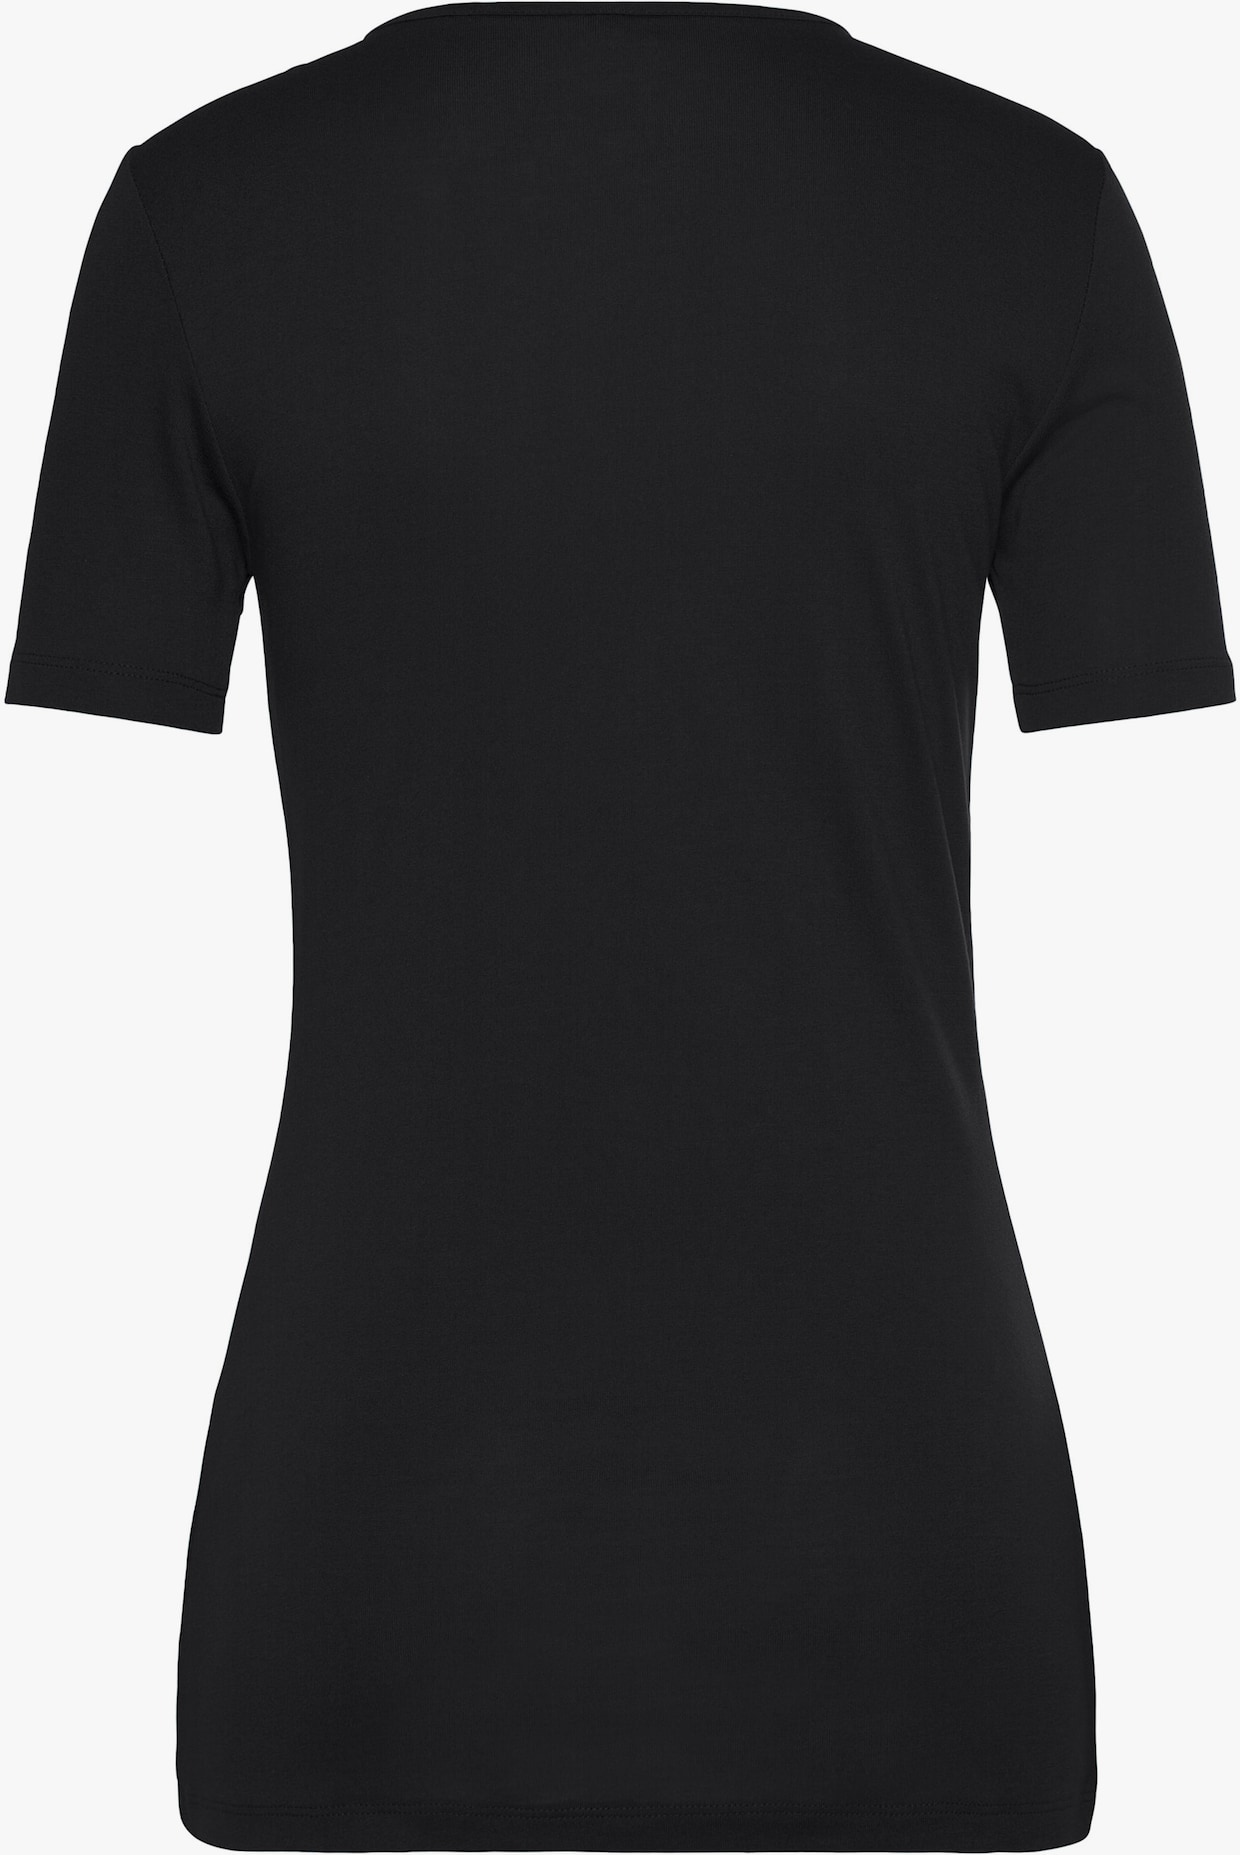 Vivance 2-in-1-shirt - zwart/wit